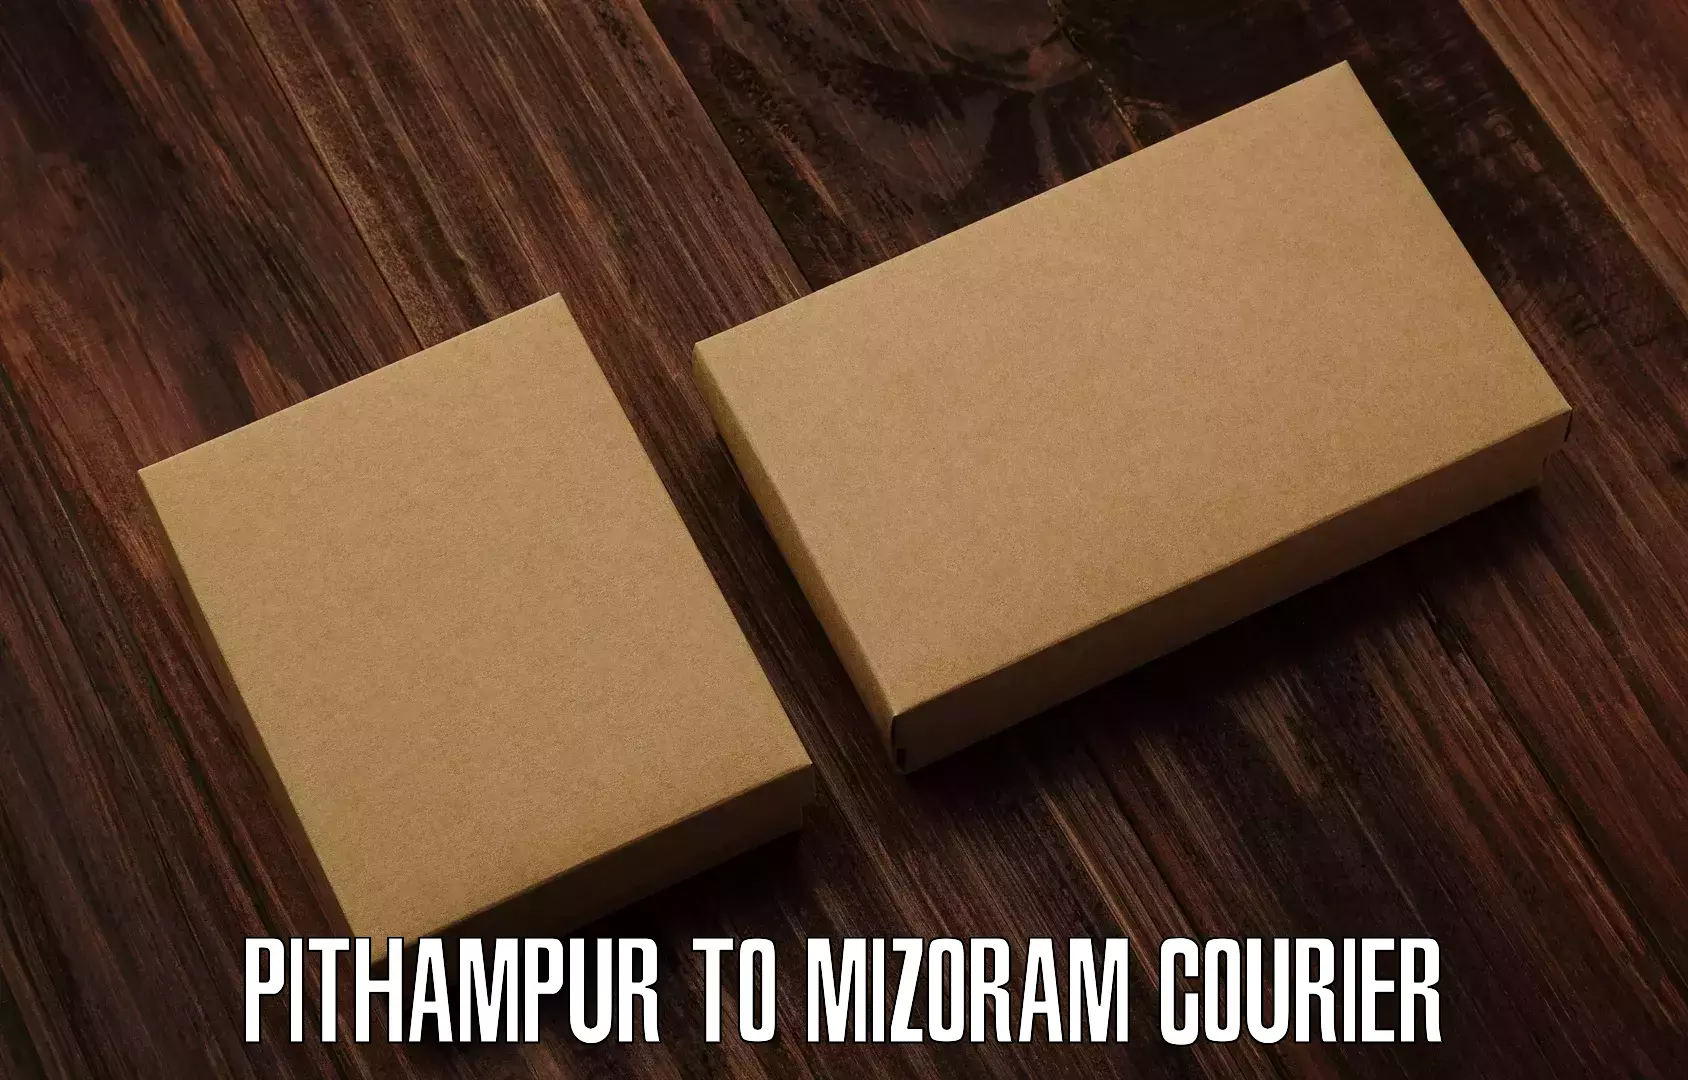 Next-day freight services Pithampur to Mizoram